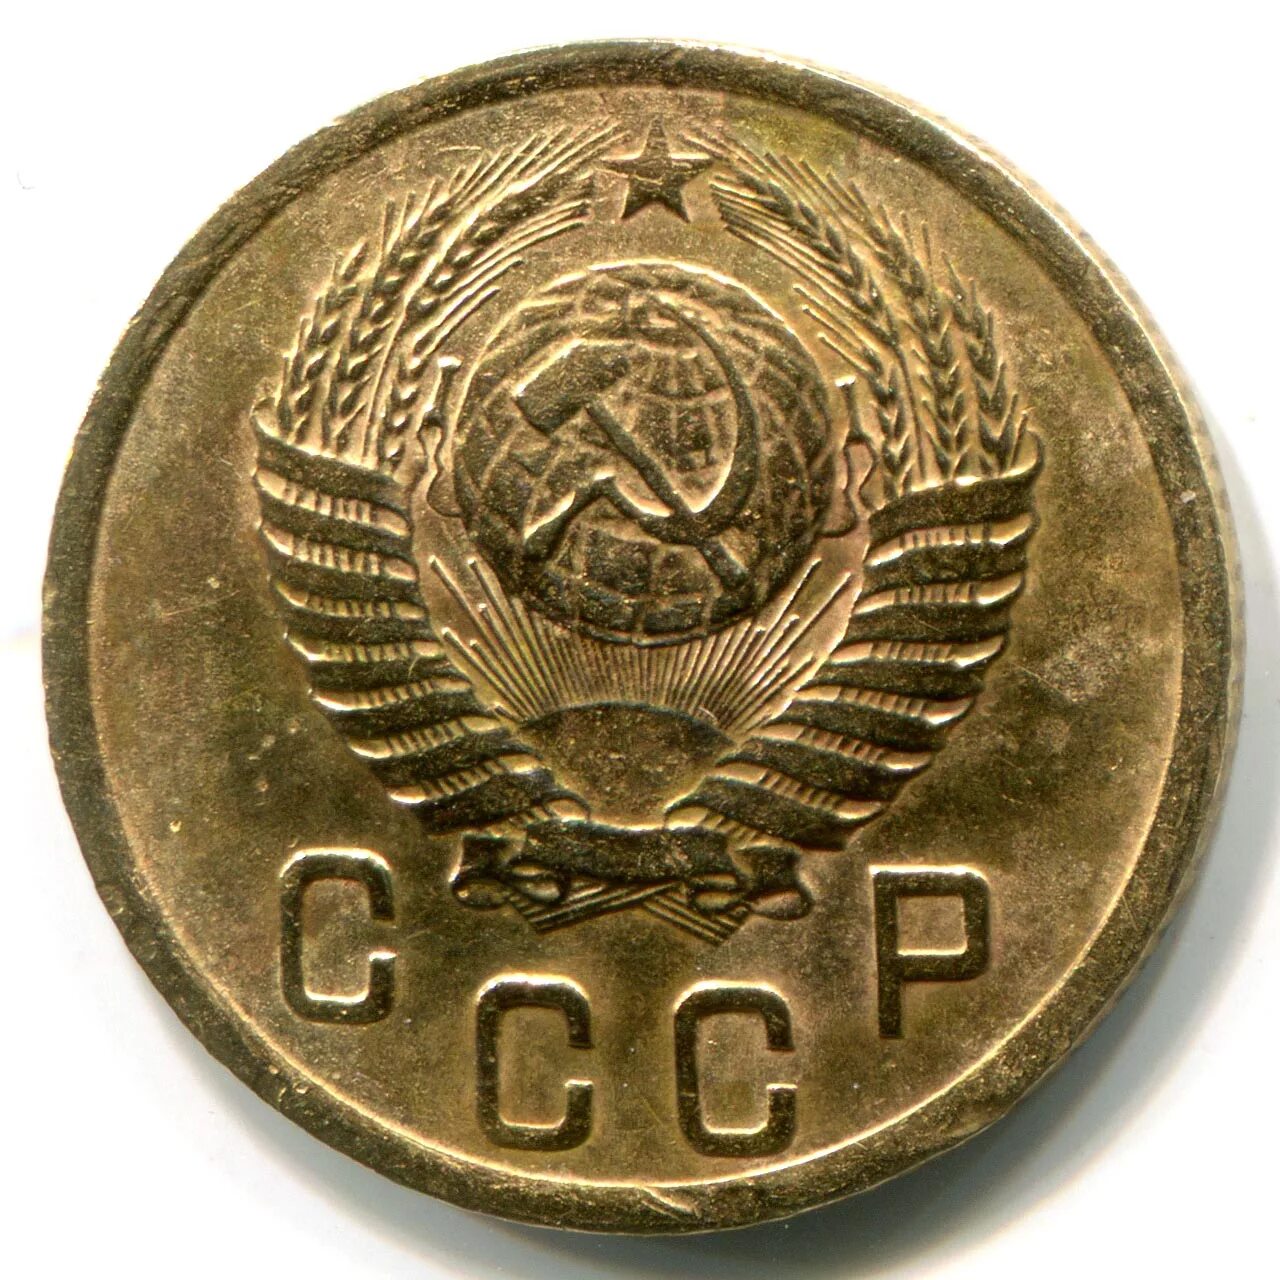 2 Копейки 1952. 2 Копейки 1952 года. 2 Копейки СССР. Монеты СССР 1952. Пробный 02